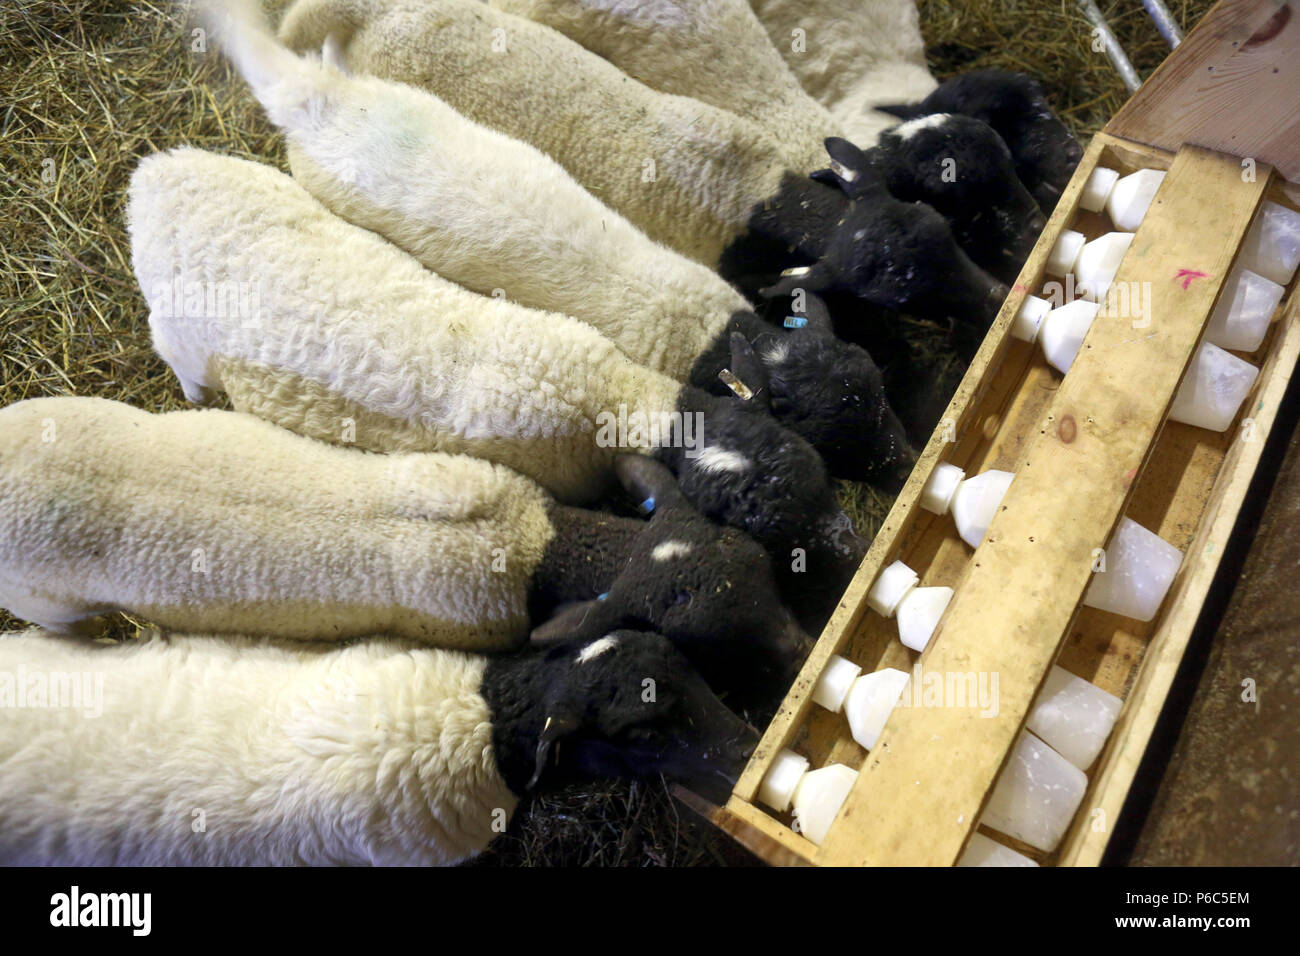 Neue Kaetwin, Deutschland - Junge Dorper Schafe trinken Milch von Flaschen in der Scheune Stockfoto